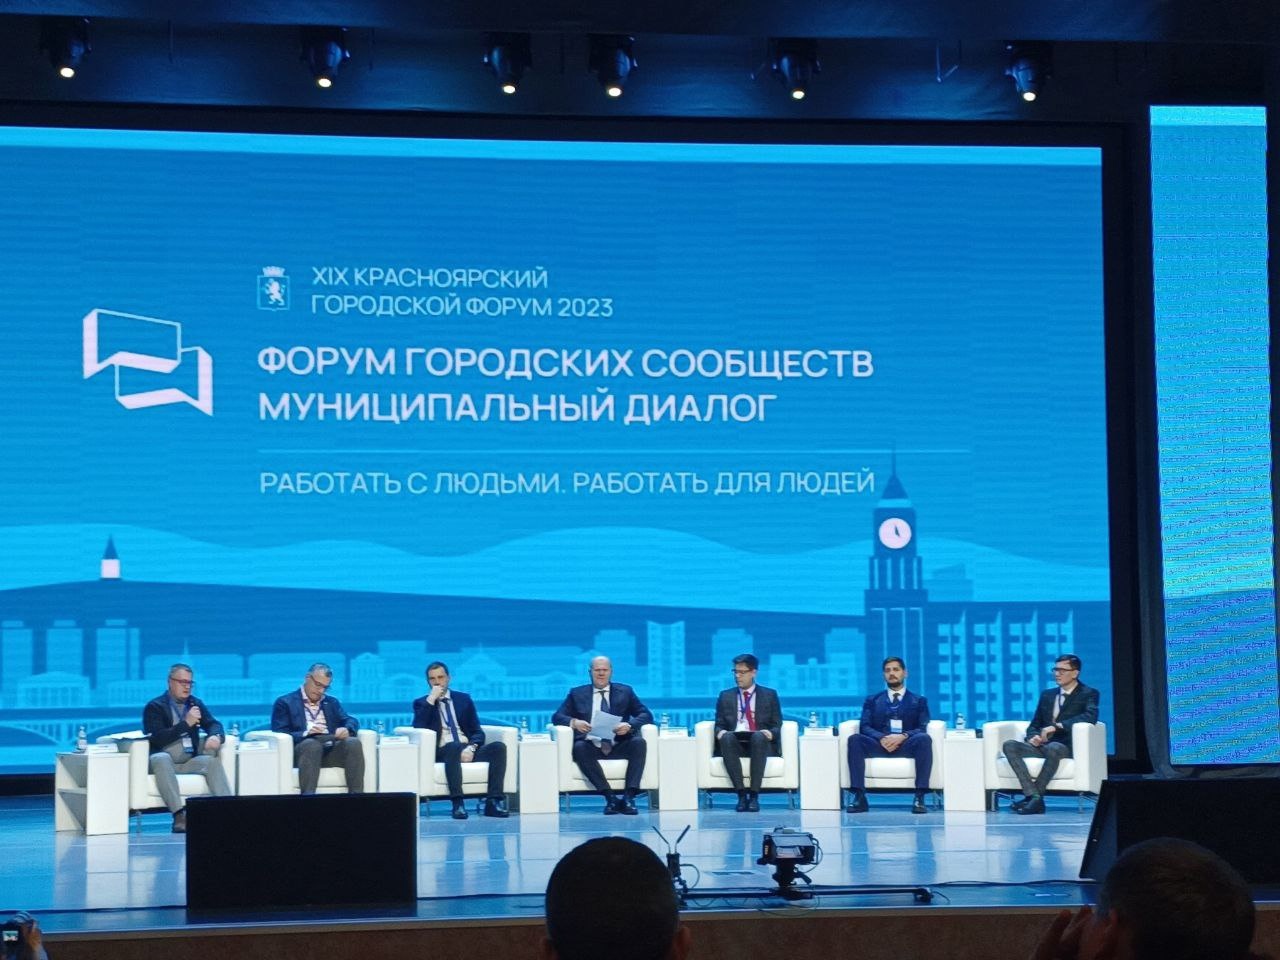 XIX Красноярский городской форум